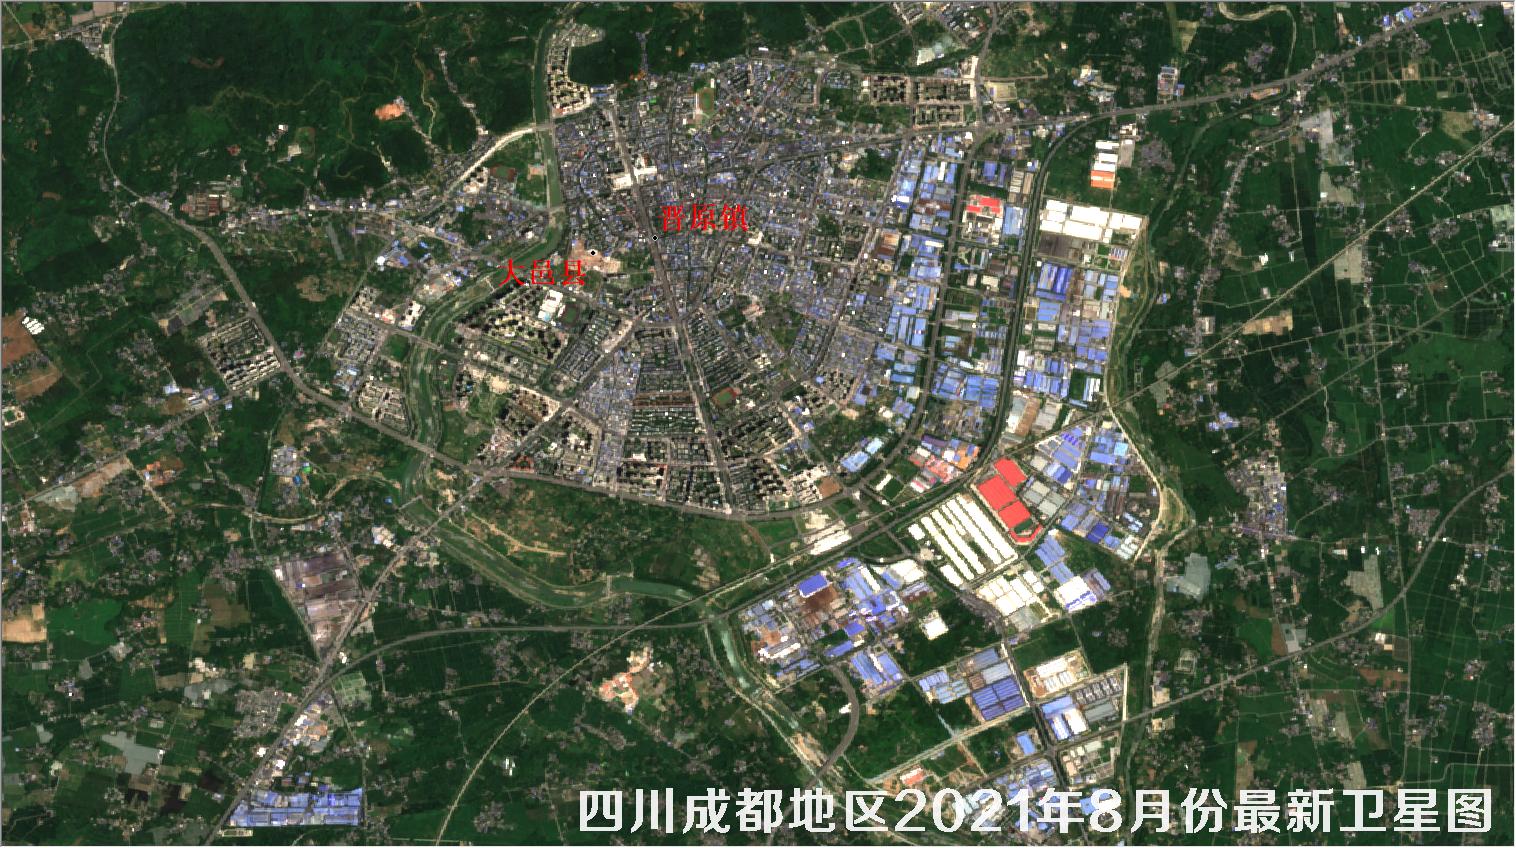 四川省成都地区2021年8月份最新卫星图